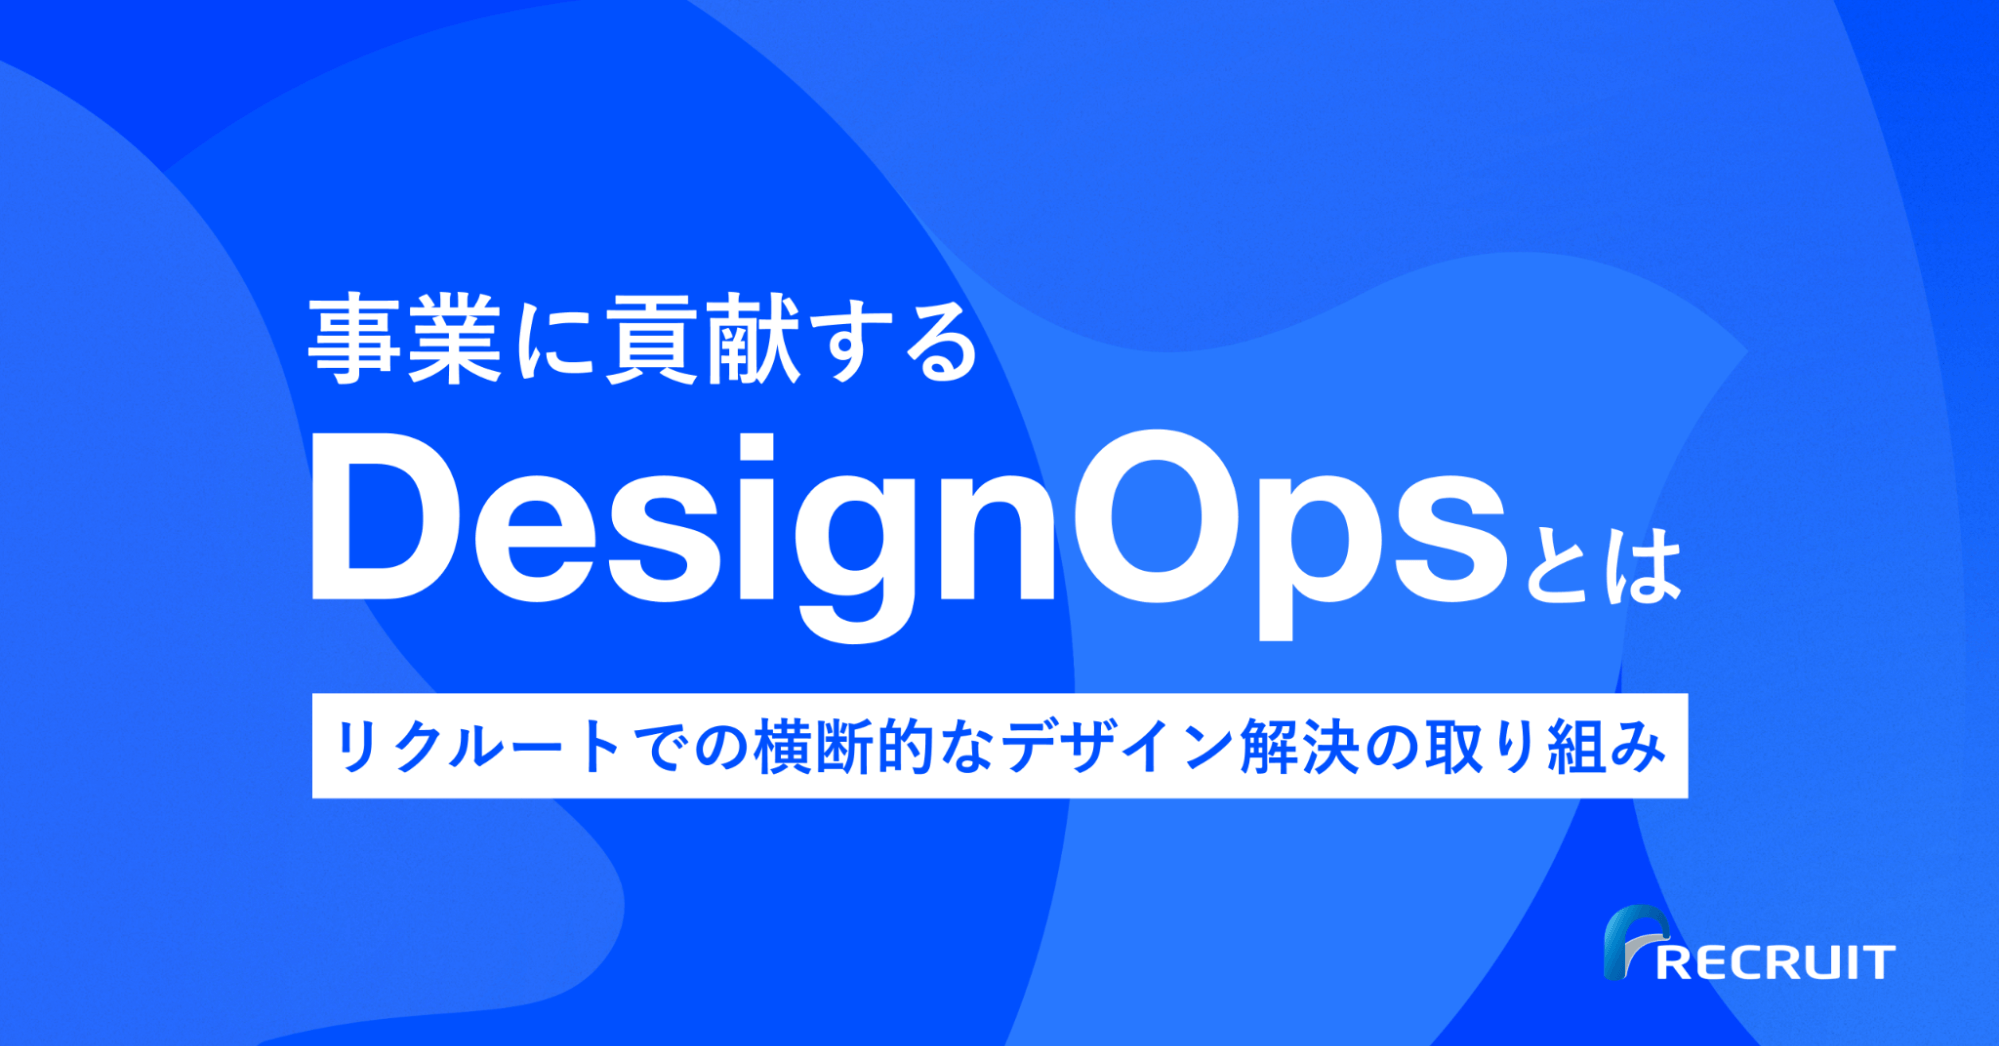 事業に貢献する「DesignOps」とは。リクルートでの横断的なデザイン課題解決の取り組み